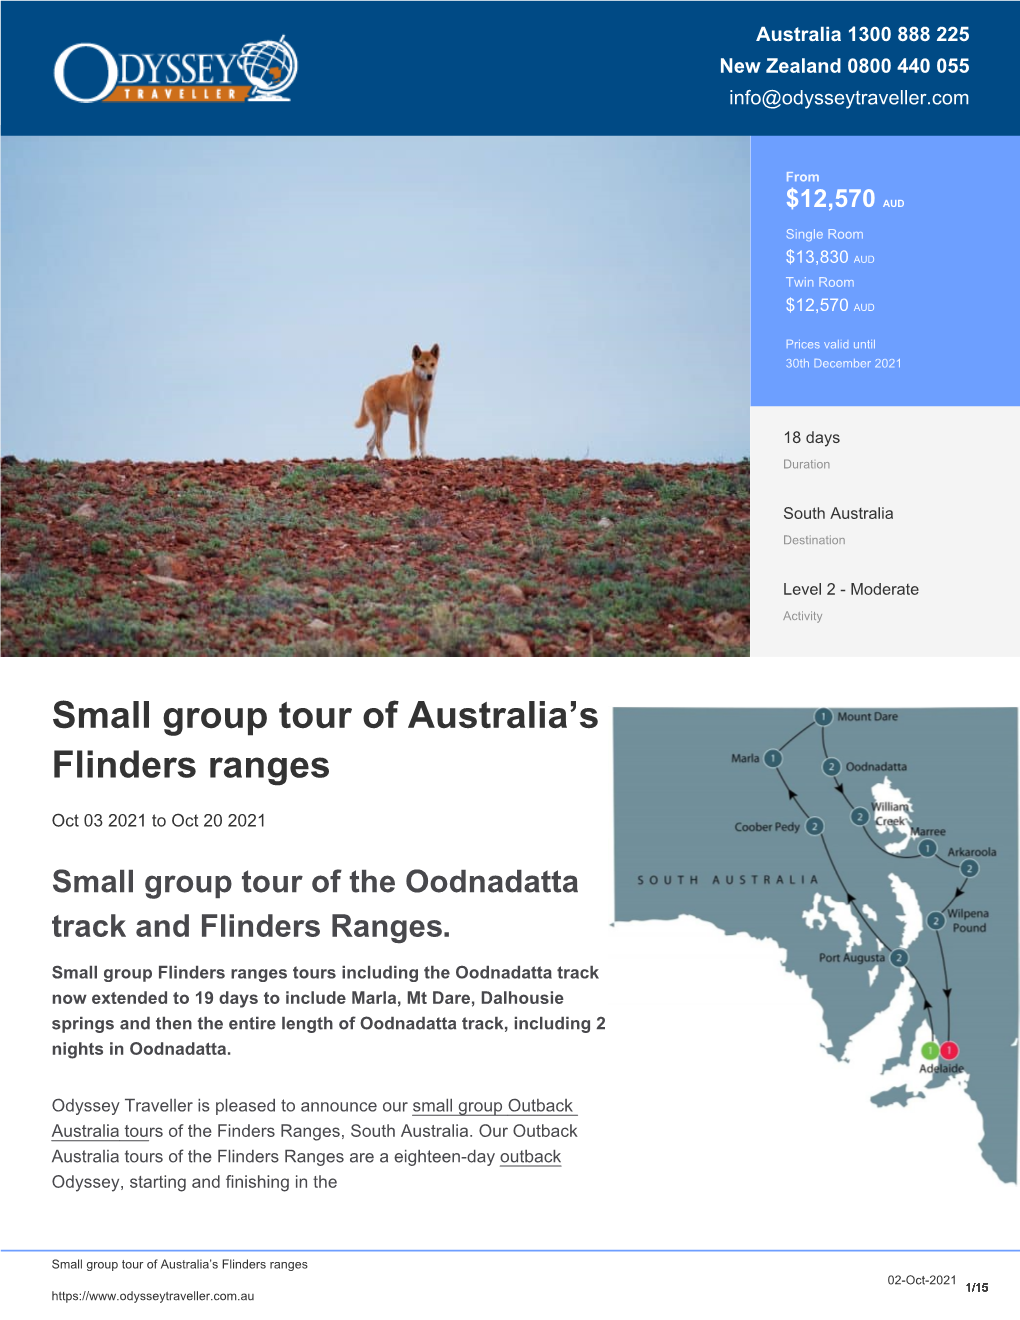 Flinders Range | Outback Australia Tour for Seniors